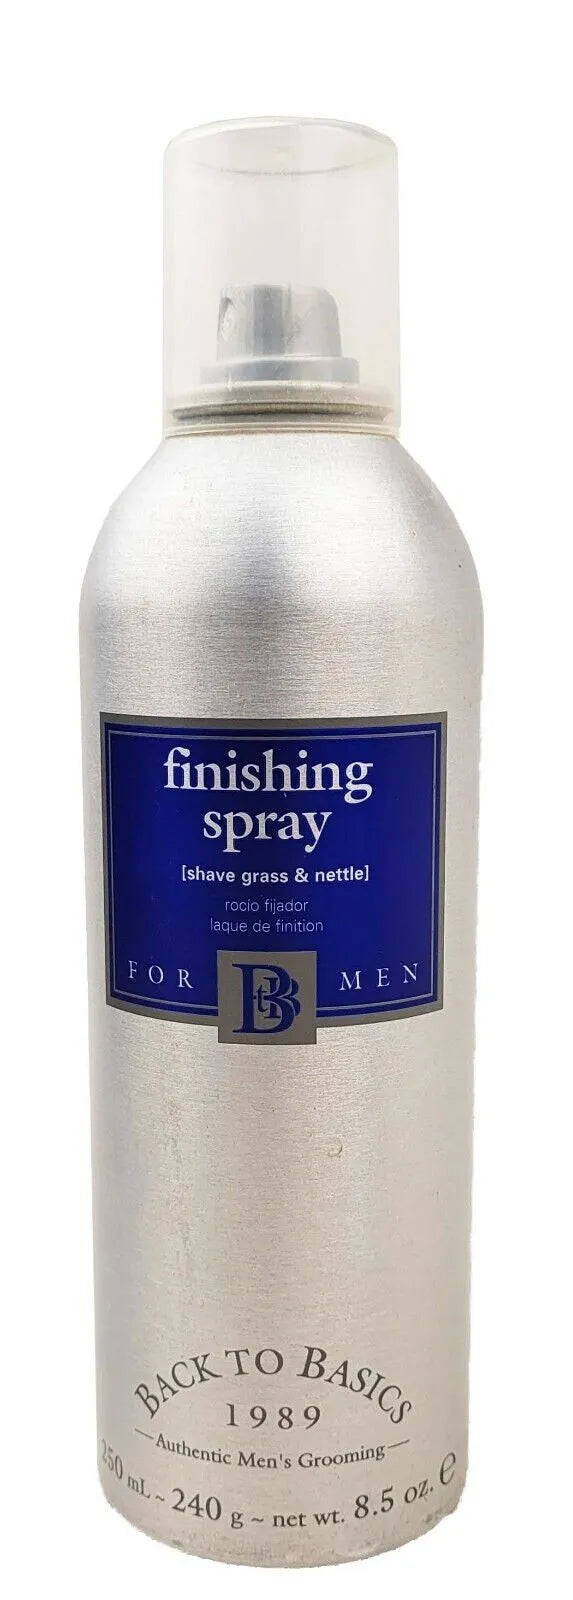 Graham Webb Back to Basics Finishing Spray for Men image of 8.5 oz bottle